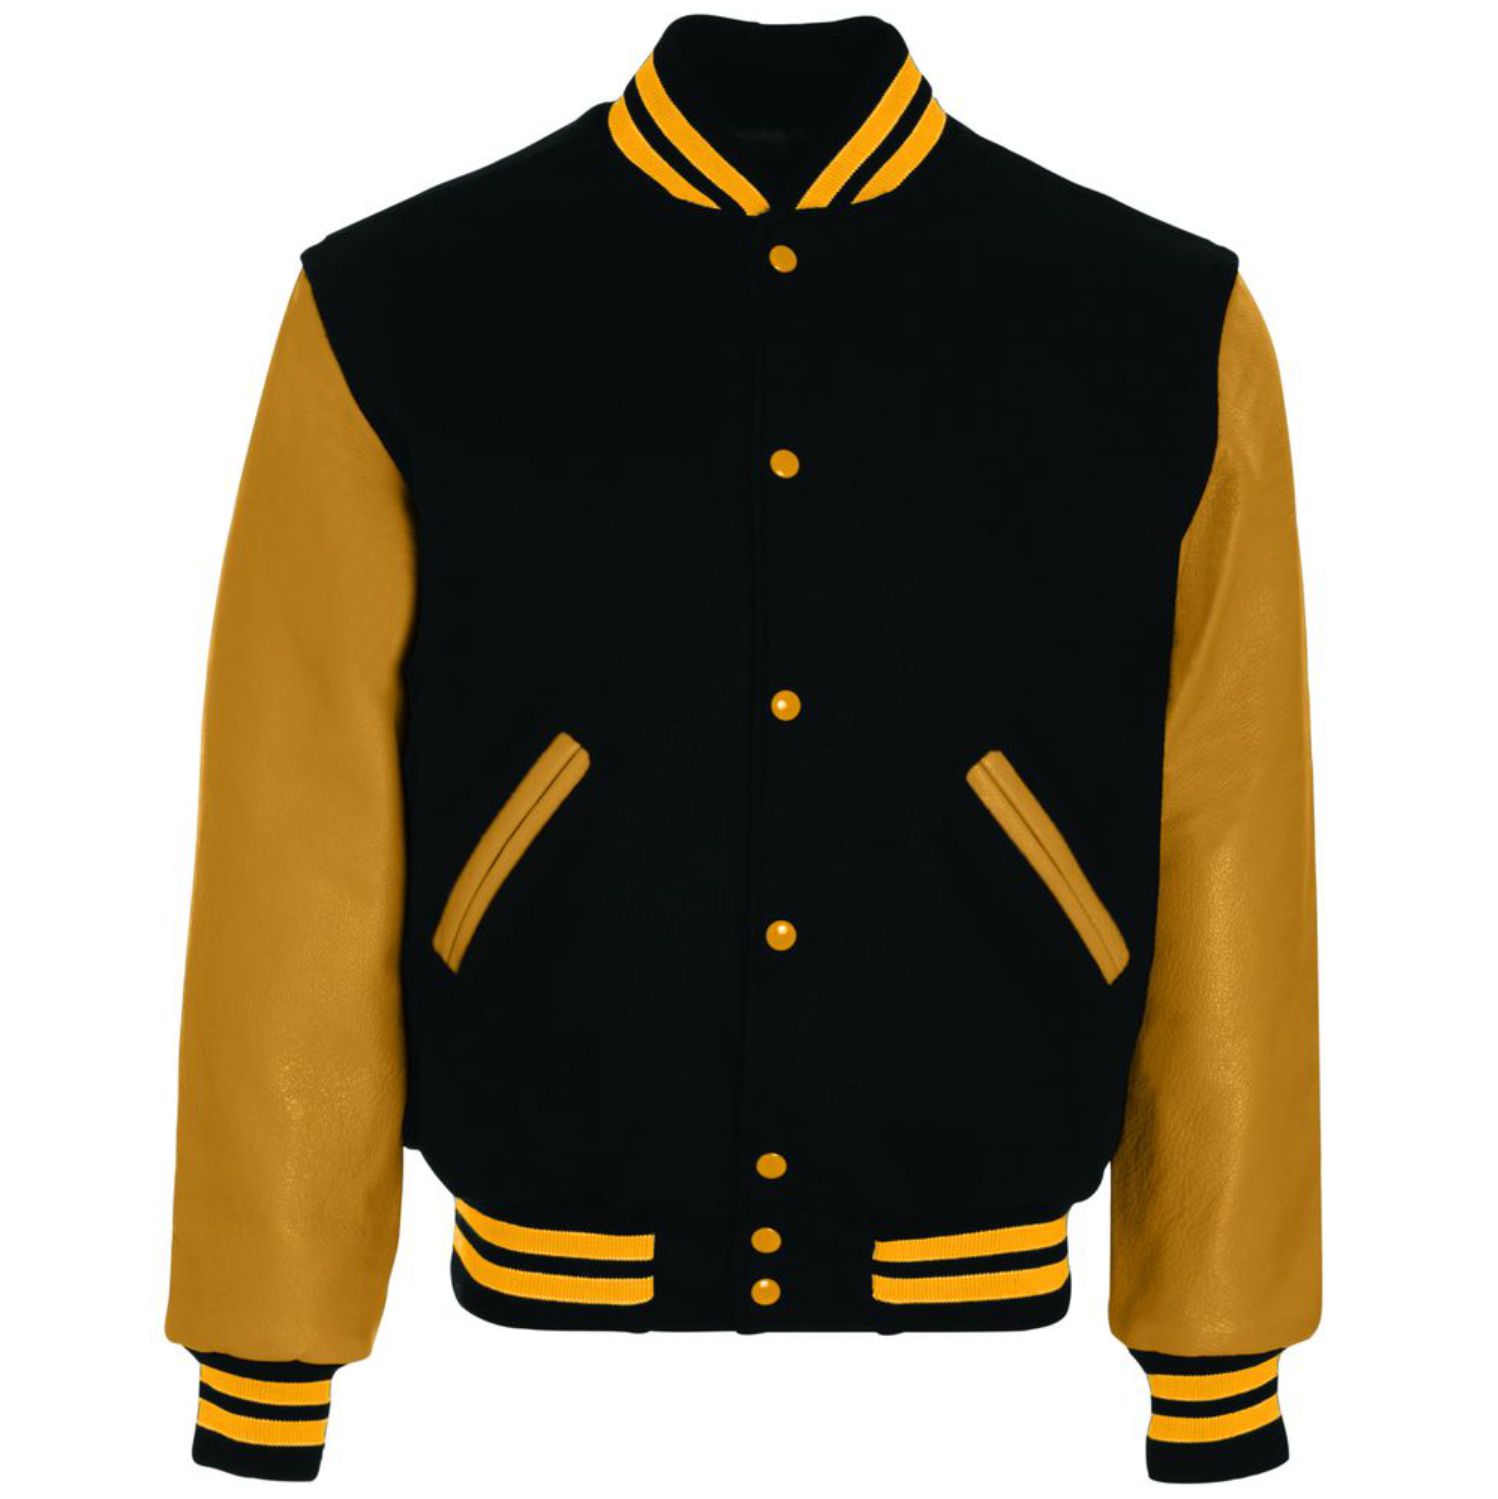 Holloway Varsity Jacket #224183 Black / Light Gold / Light Gold